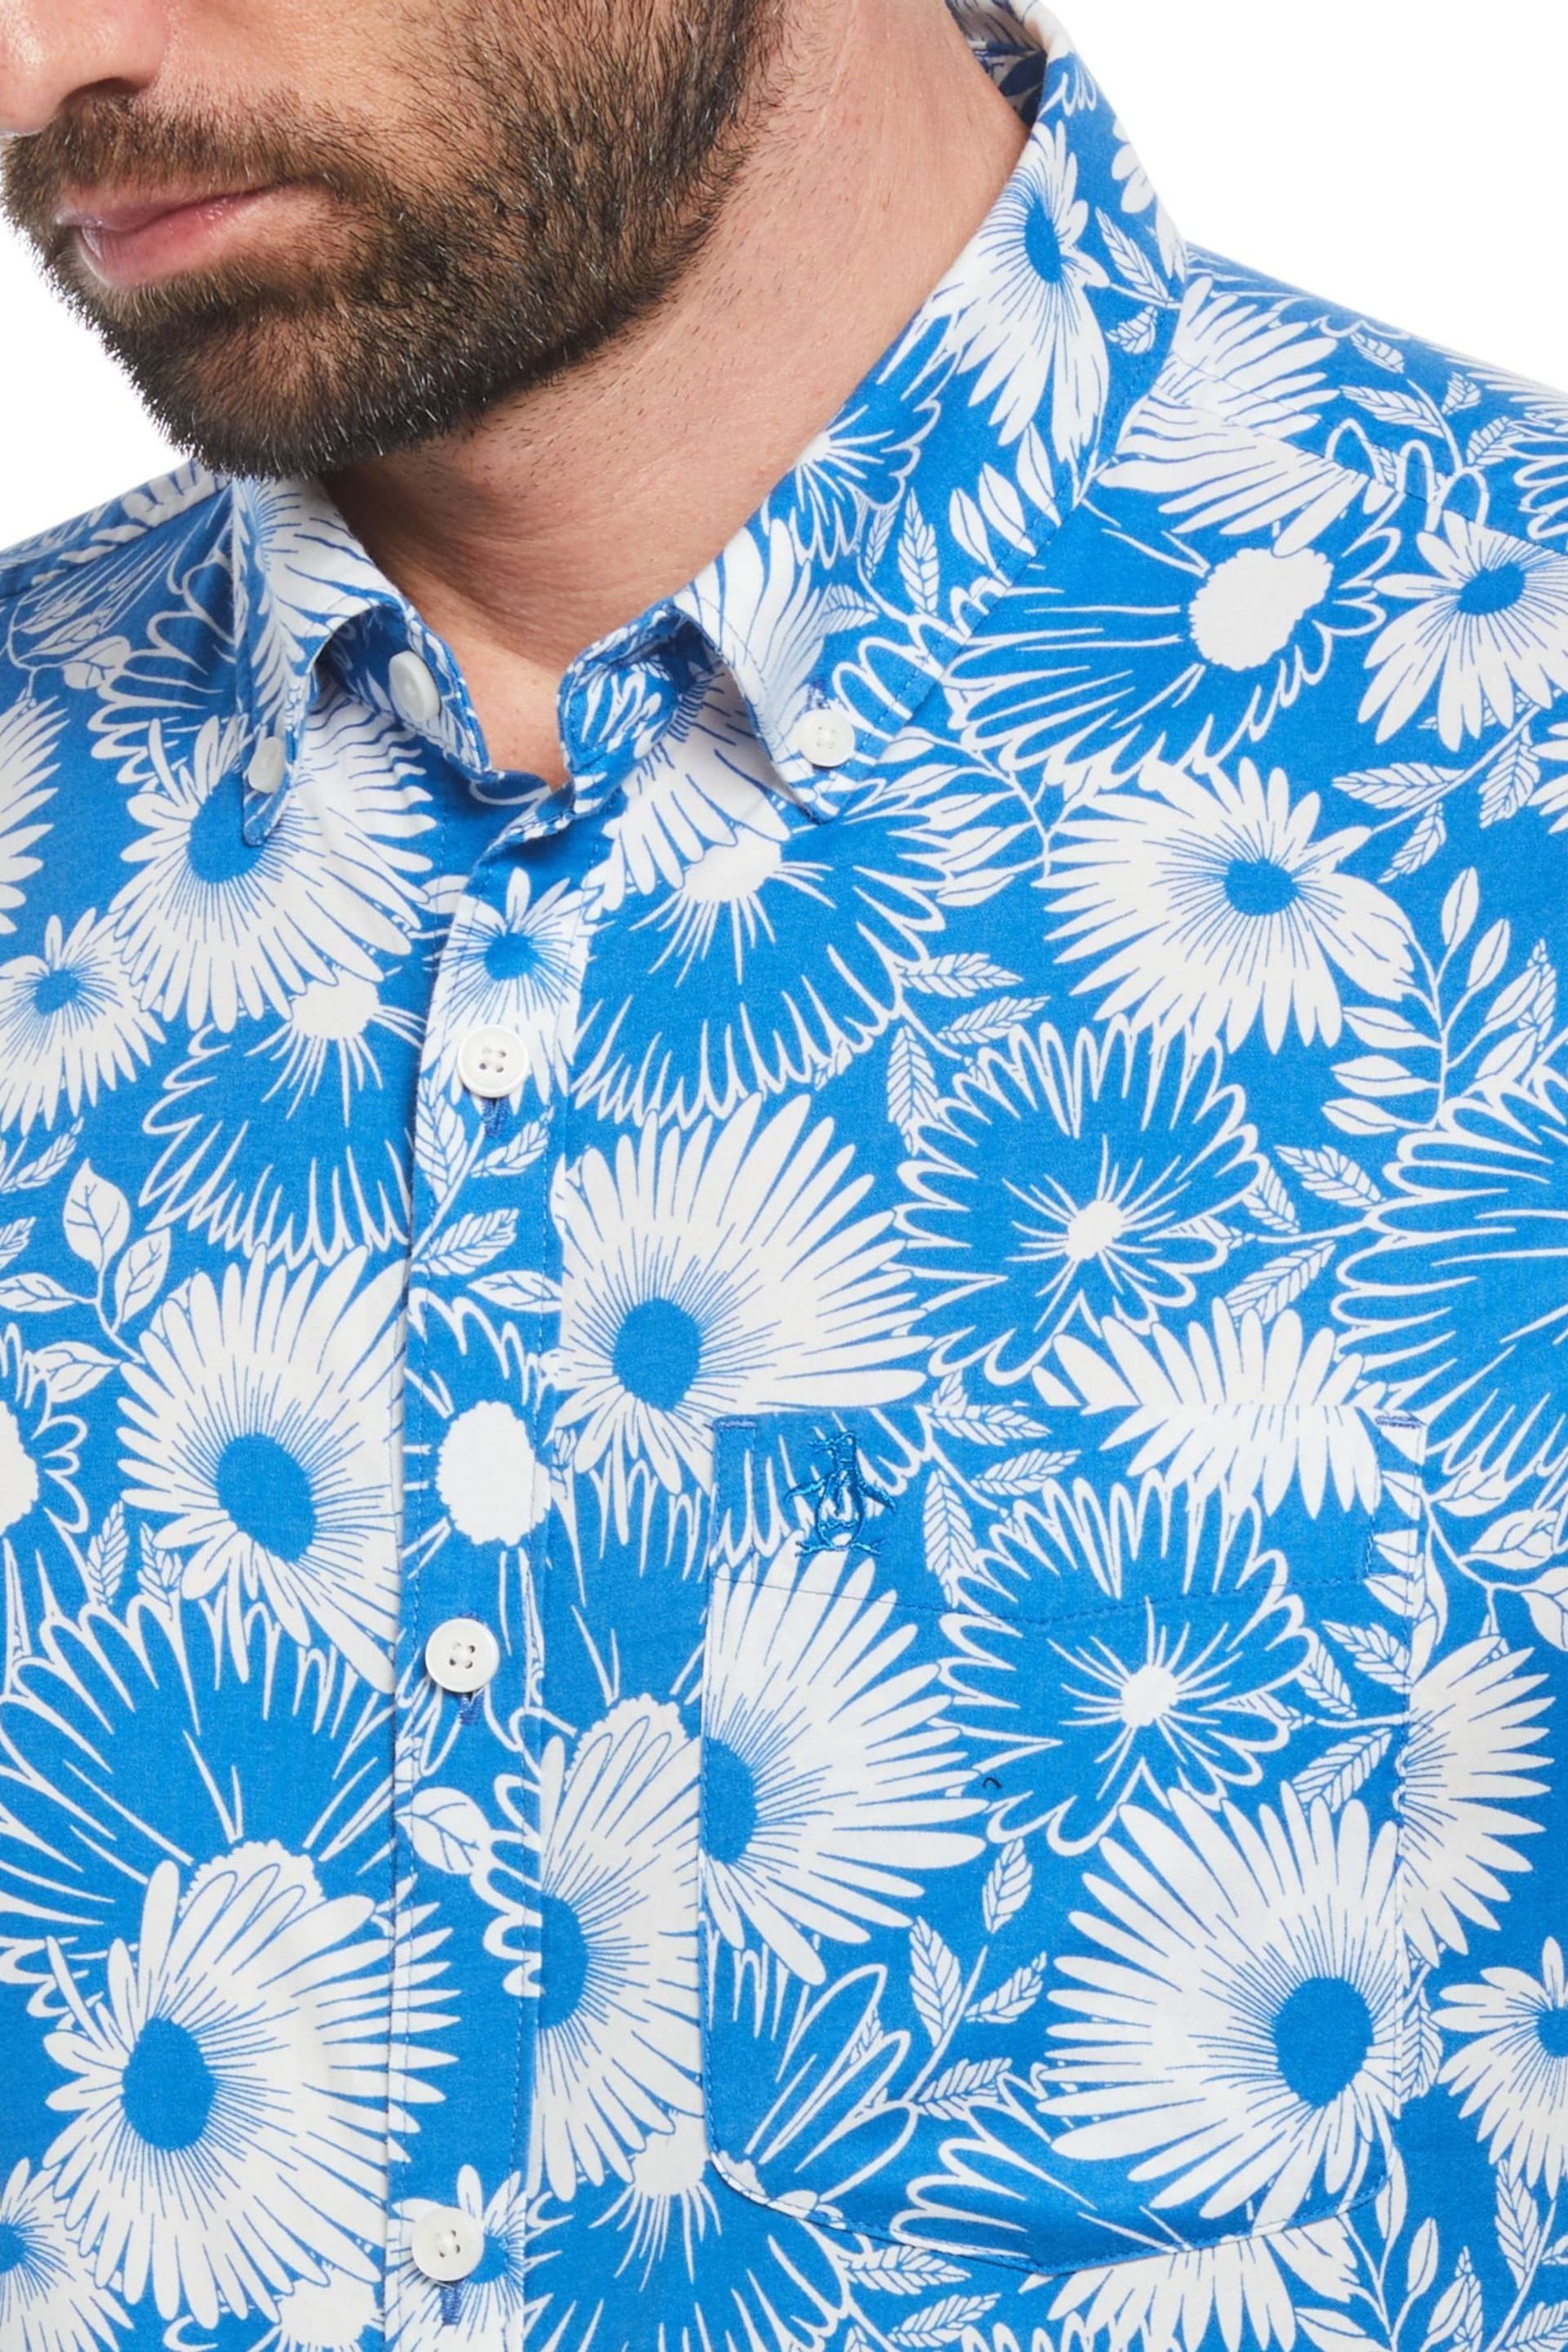 Original Penguin All-Over Floral Print Cotton Blend Short Sleeve Shirt - Image 3 of 3